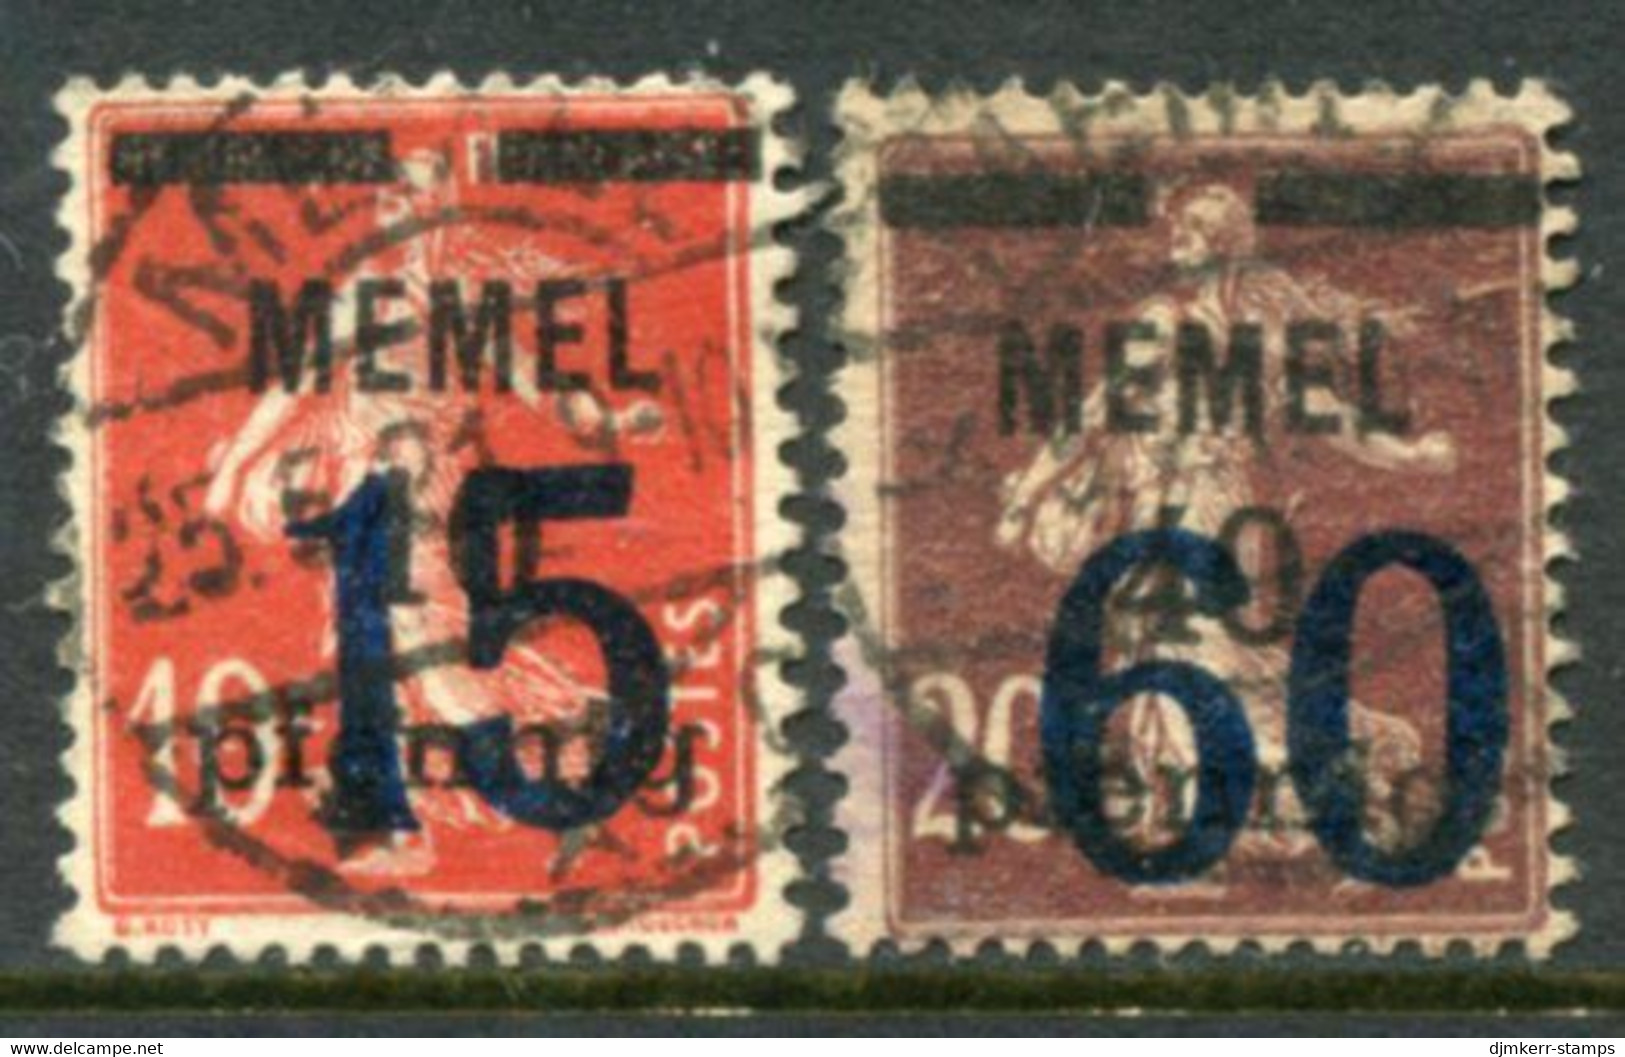 MEMEL 1921  Overprints 15 And 60 Used. Stonischken. Michel 34-35 - Memelgebiet 1923